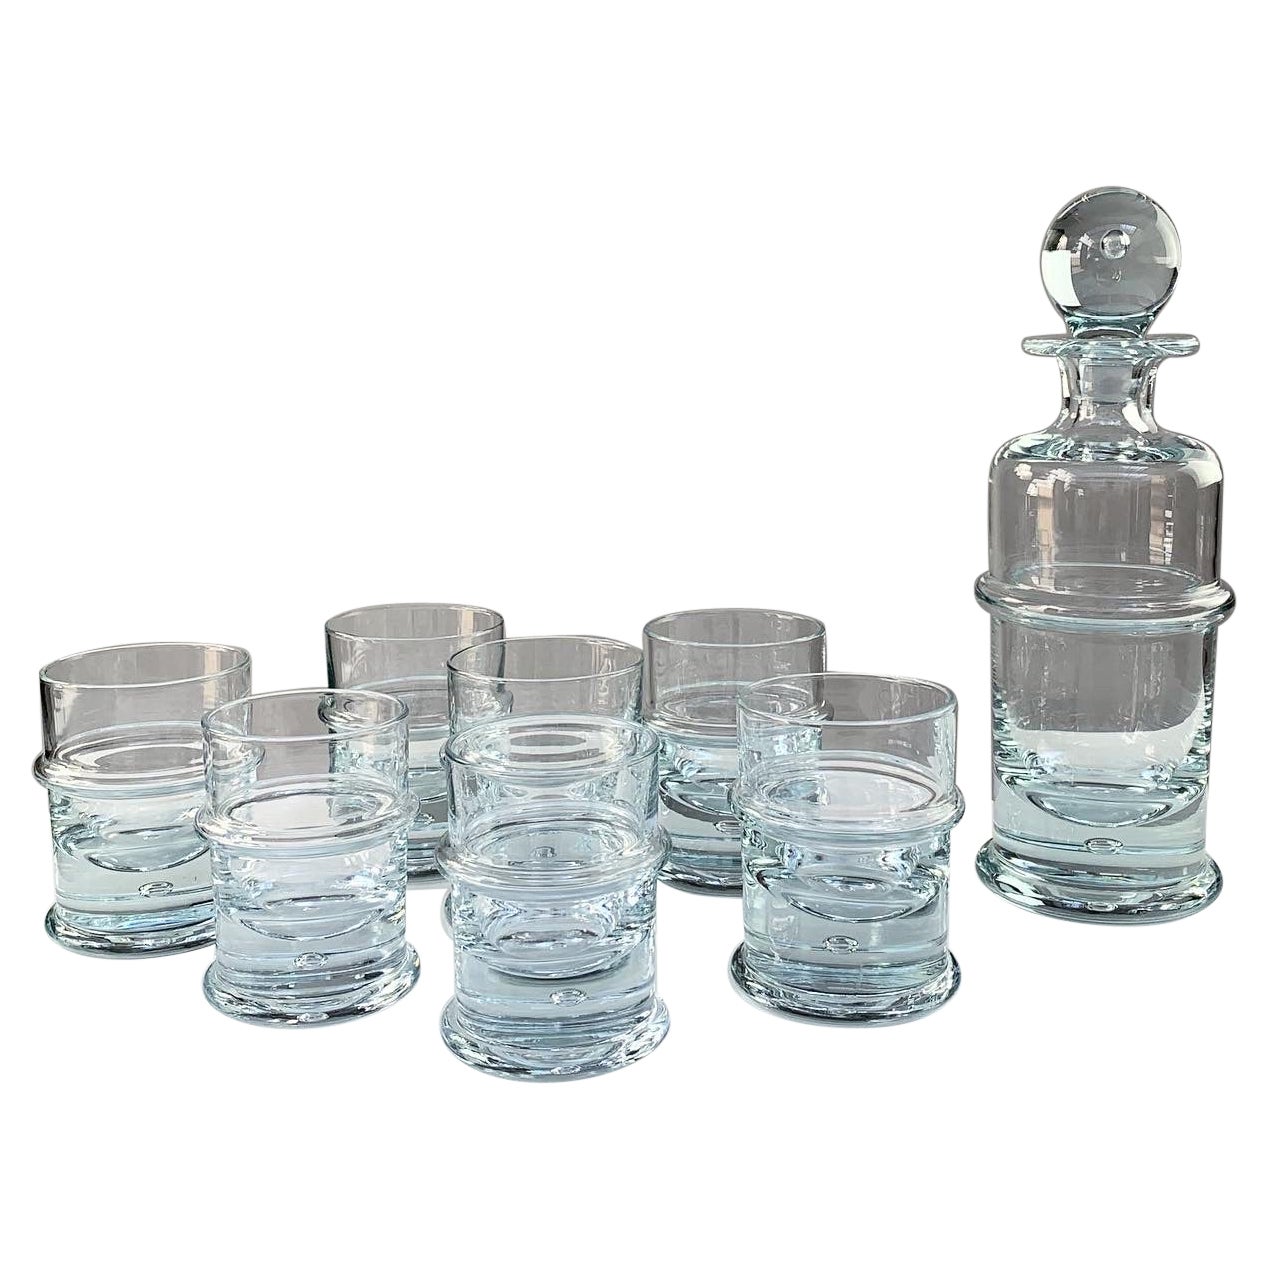 Holmegaard Crystal Glass Decanter Bottle & Tumbler Glasses Regiment Sidse Werner